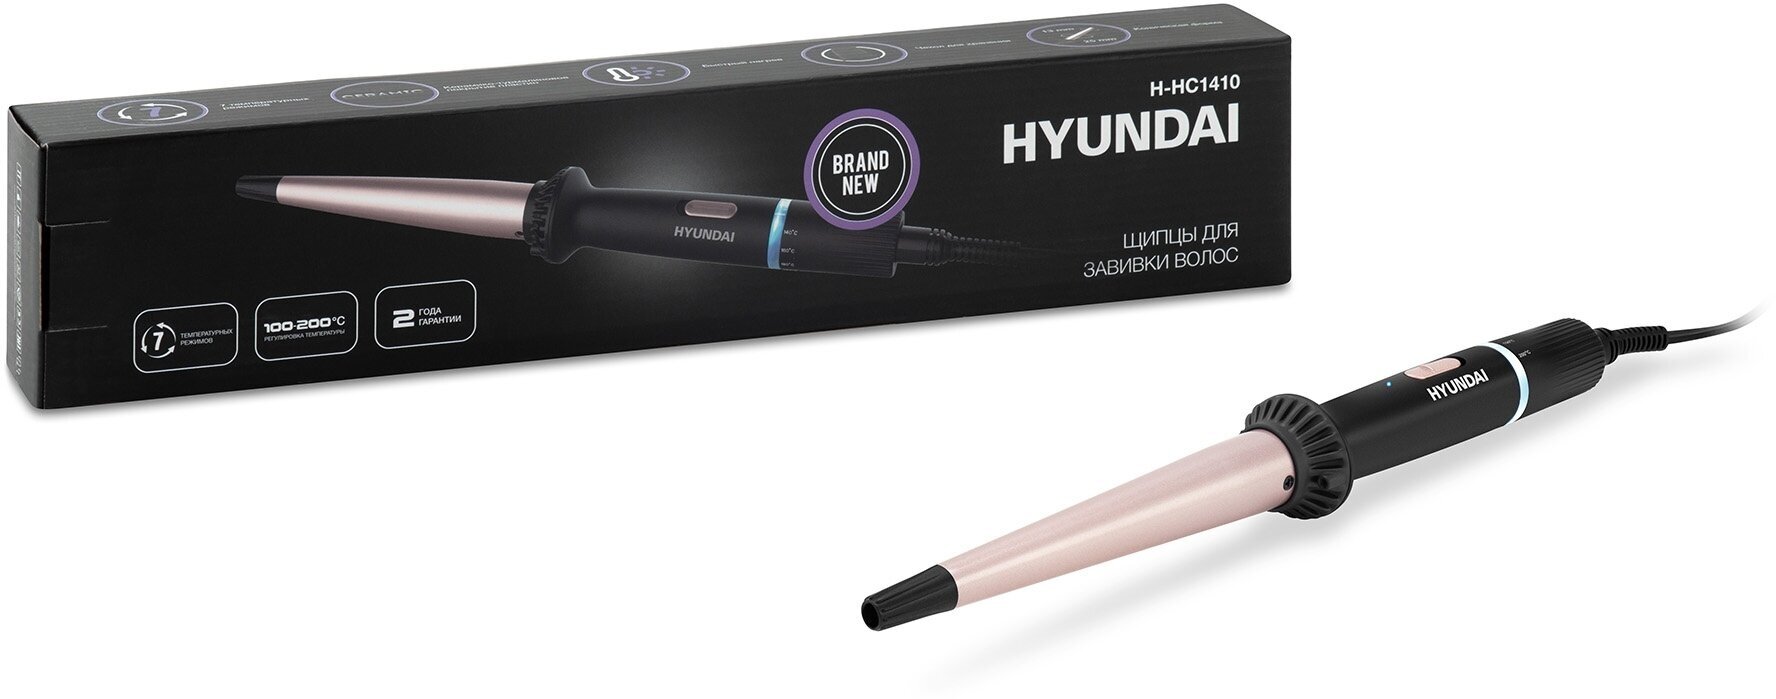 Щипцы Hyundai H-HC1410 40Вт макс. темп:200С покрытие: керамико-турмалиновое черный